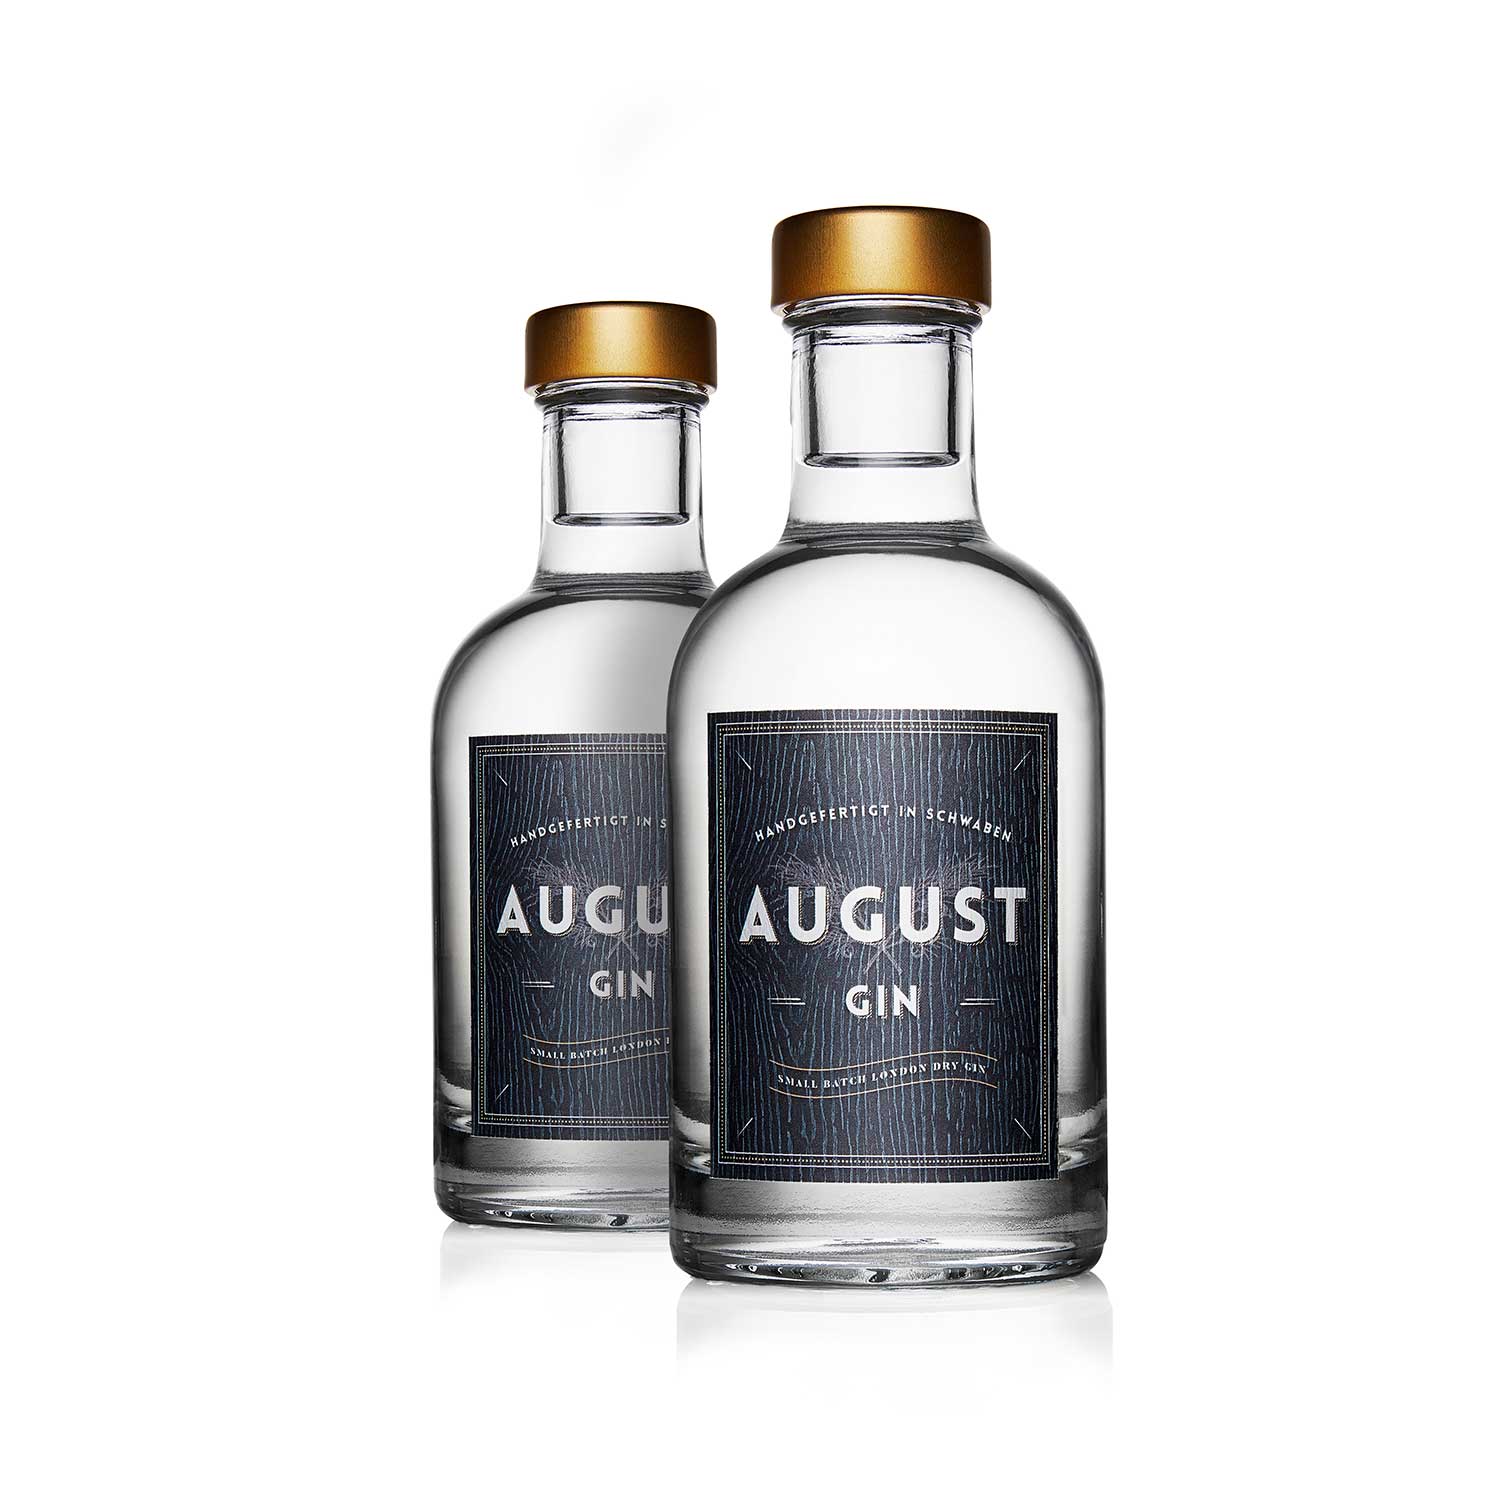 Augusta gin - Die qualitativsten Augusta gin verglichen!